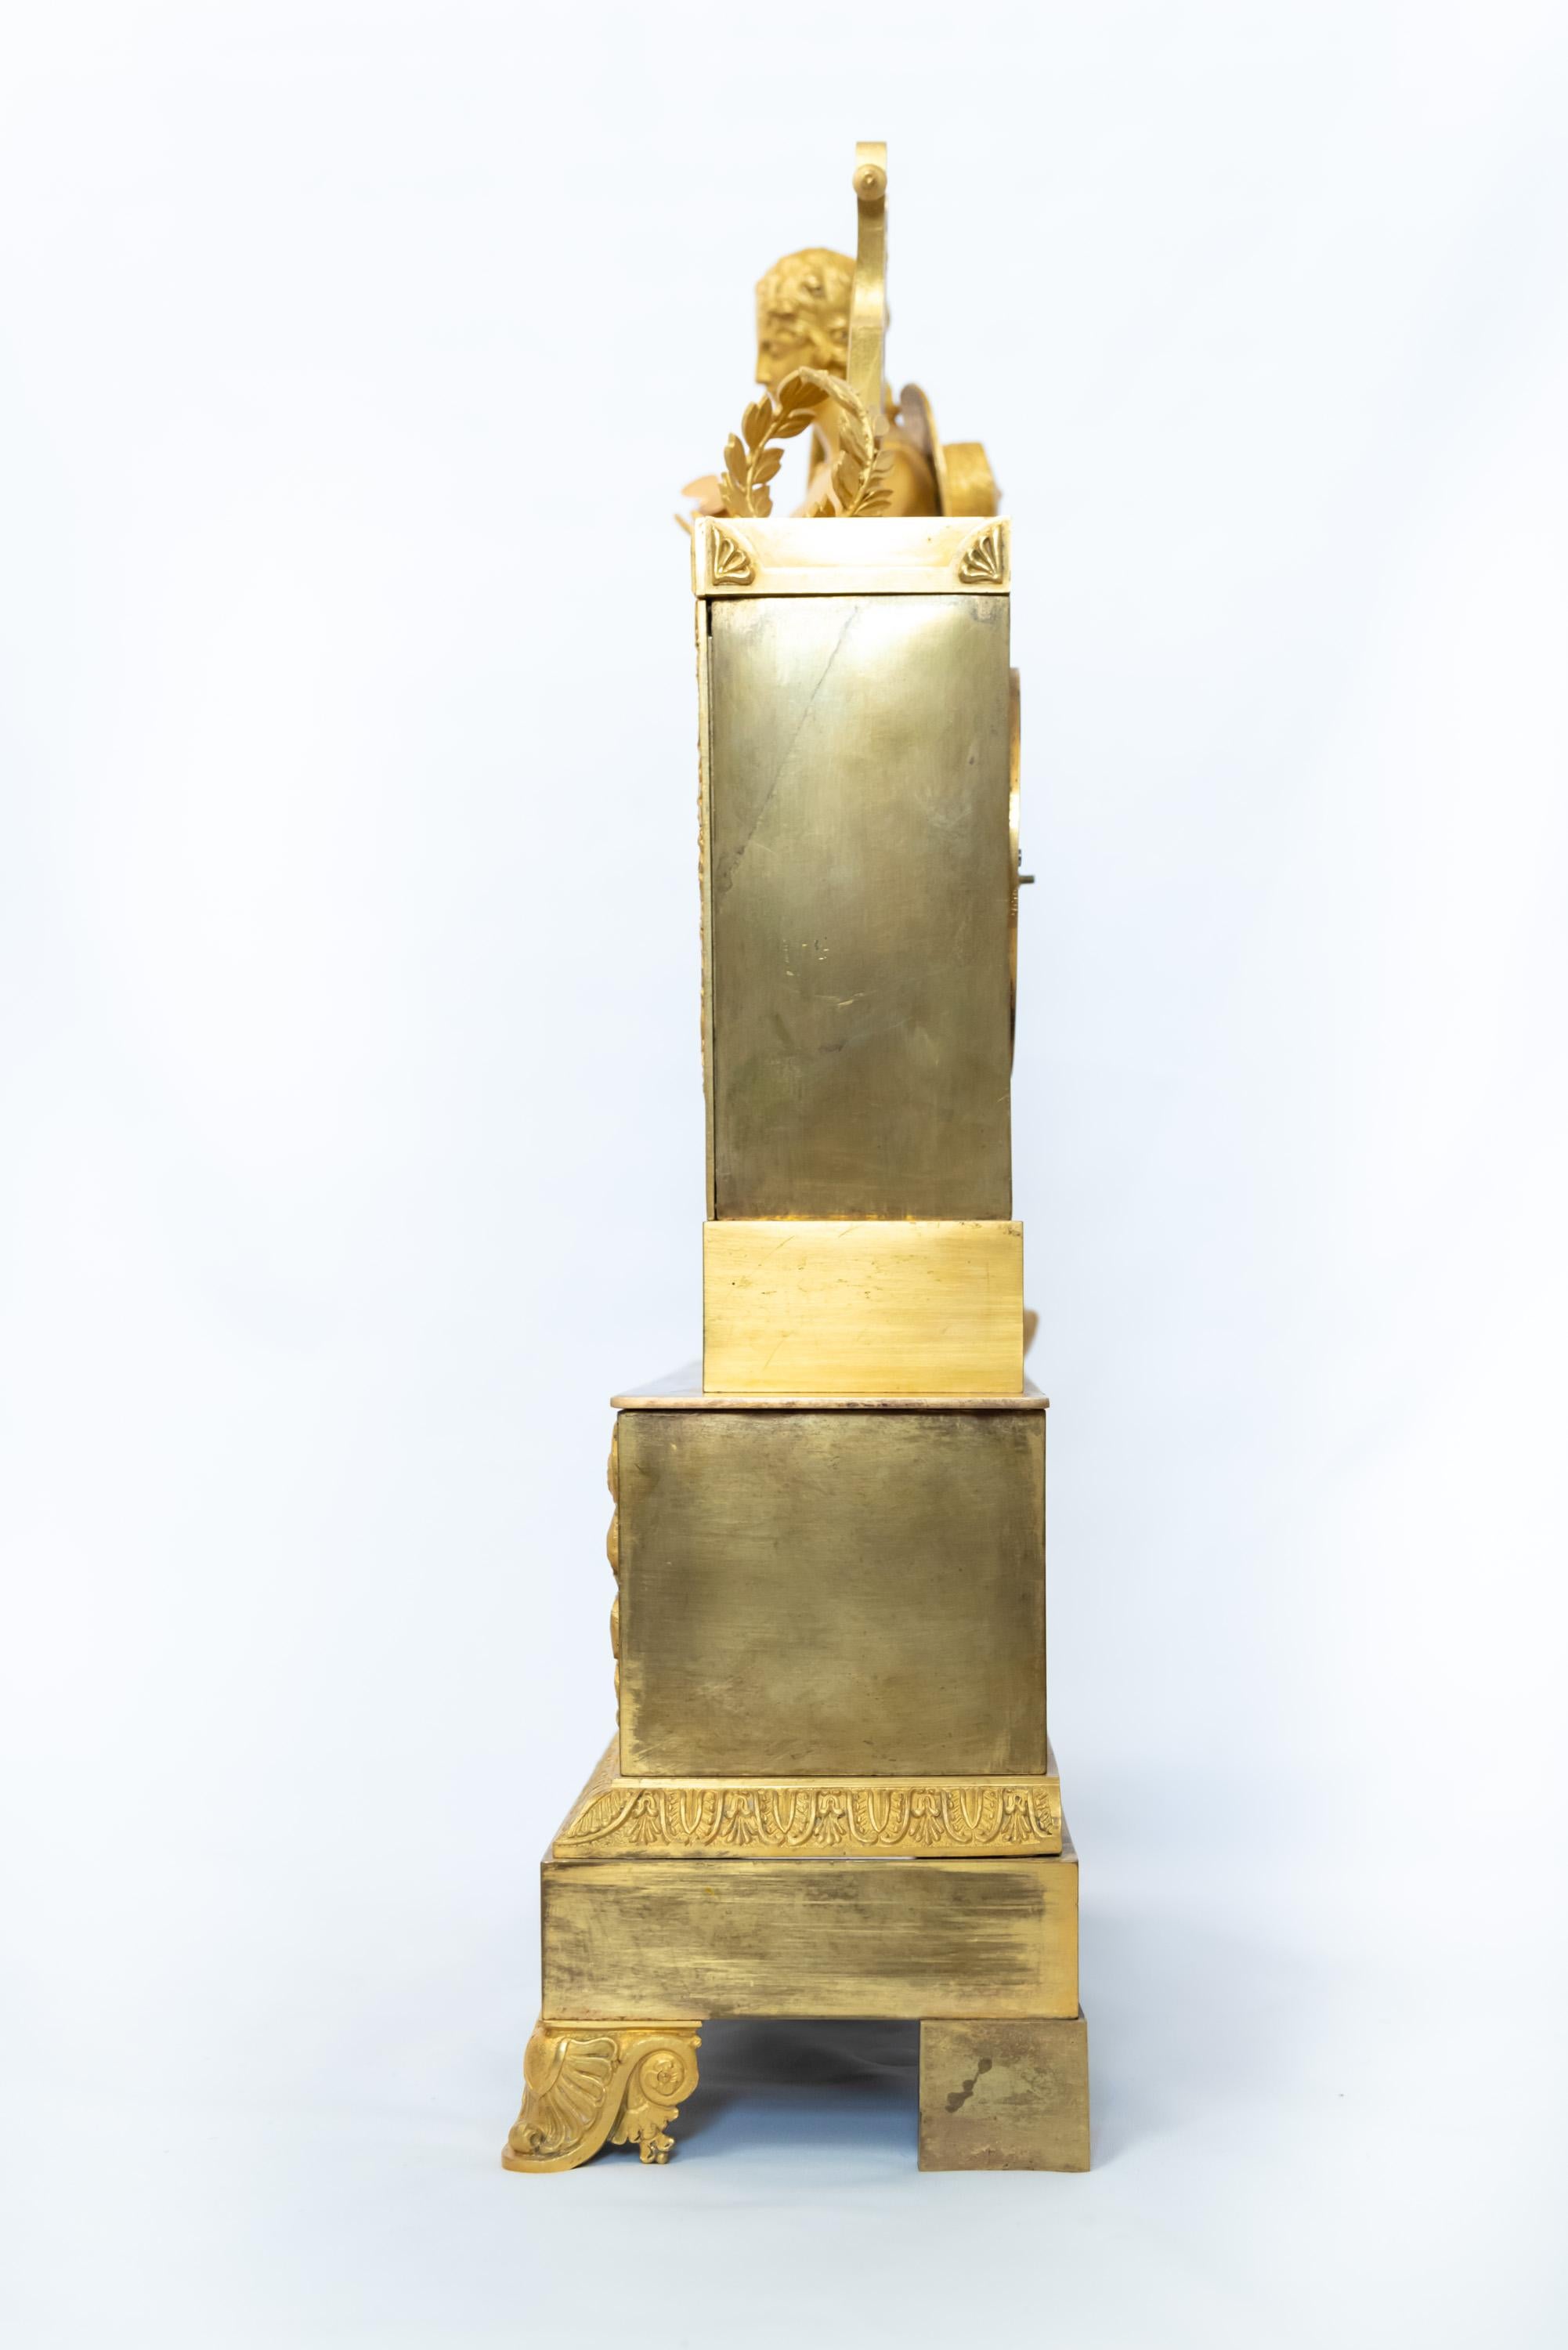 Une pendule de cheminée de très bonne qualité de la période de la Restauration française vers 1820.  Le personnage néoclassique représente le berger Paris, avec le bâton et le chapeau requis, admirant un papillon (note : le papillon semble être un